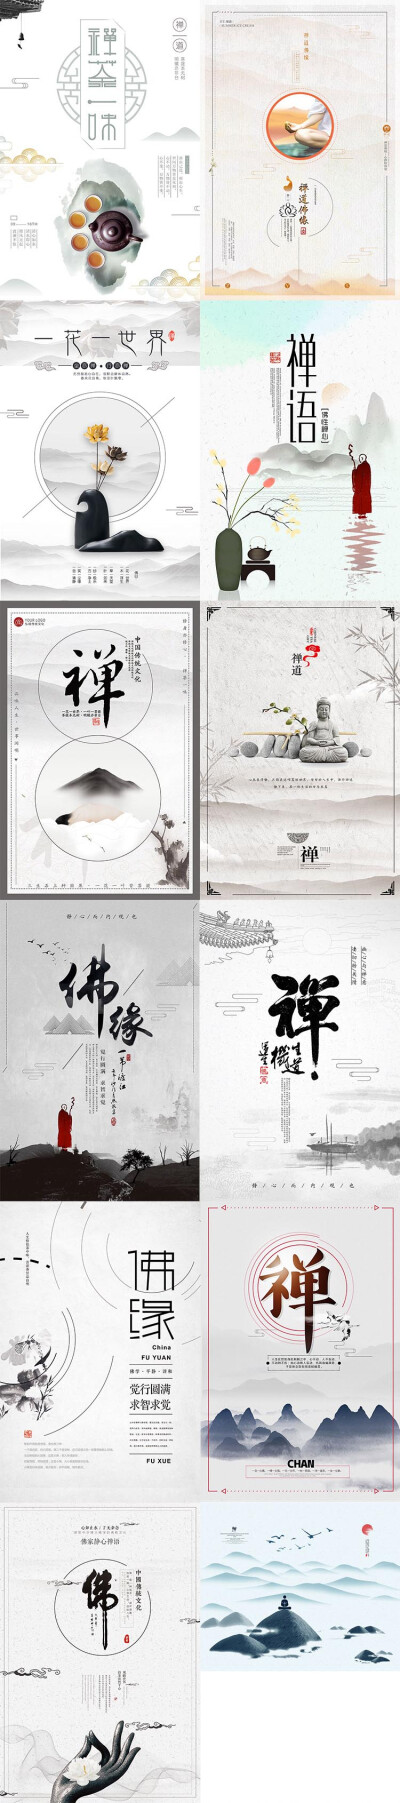 河南传统文化 - 堆糖,美图壁纸兴趣社区